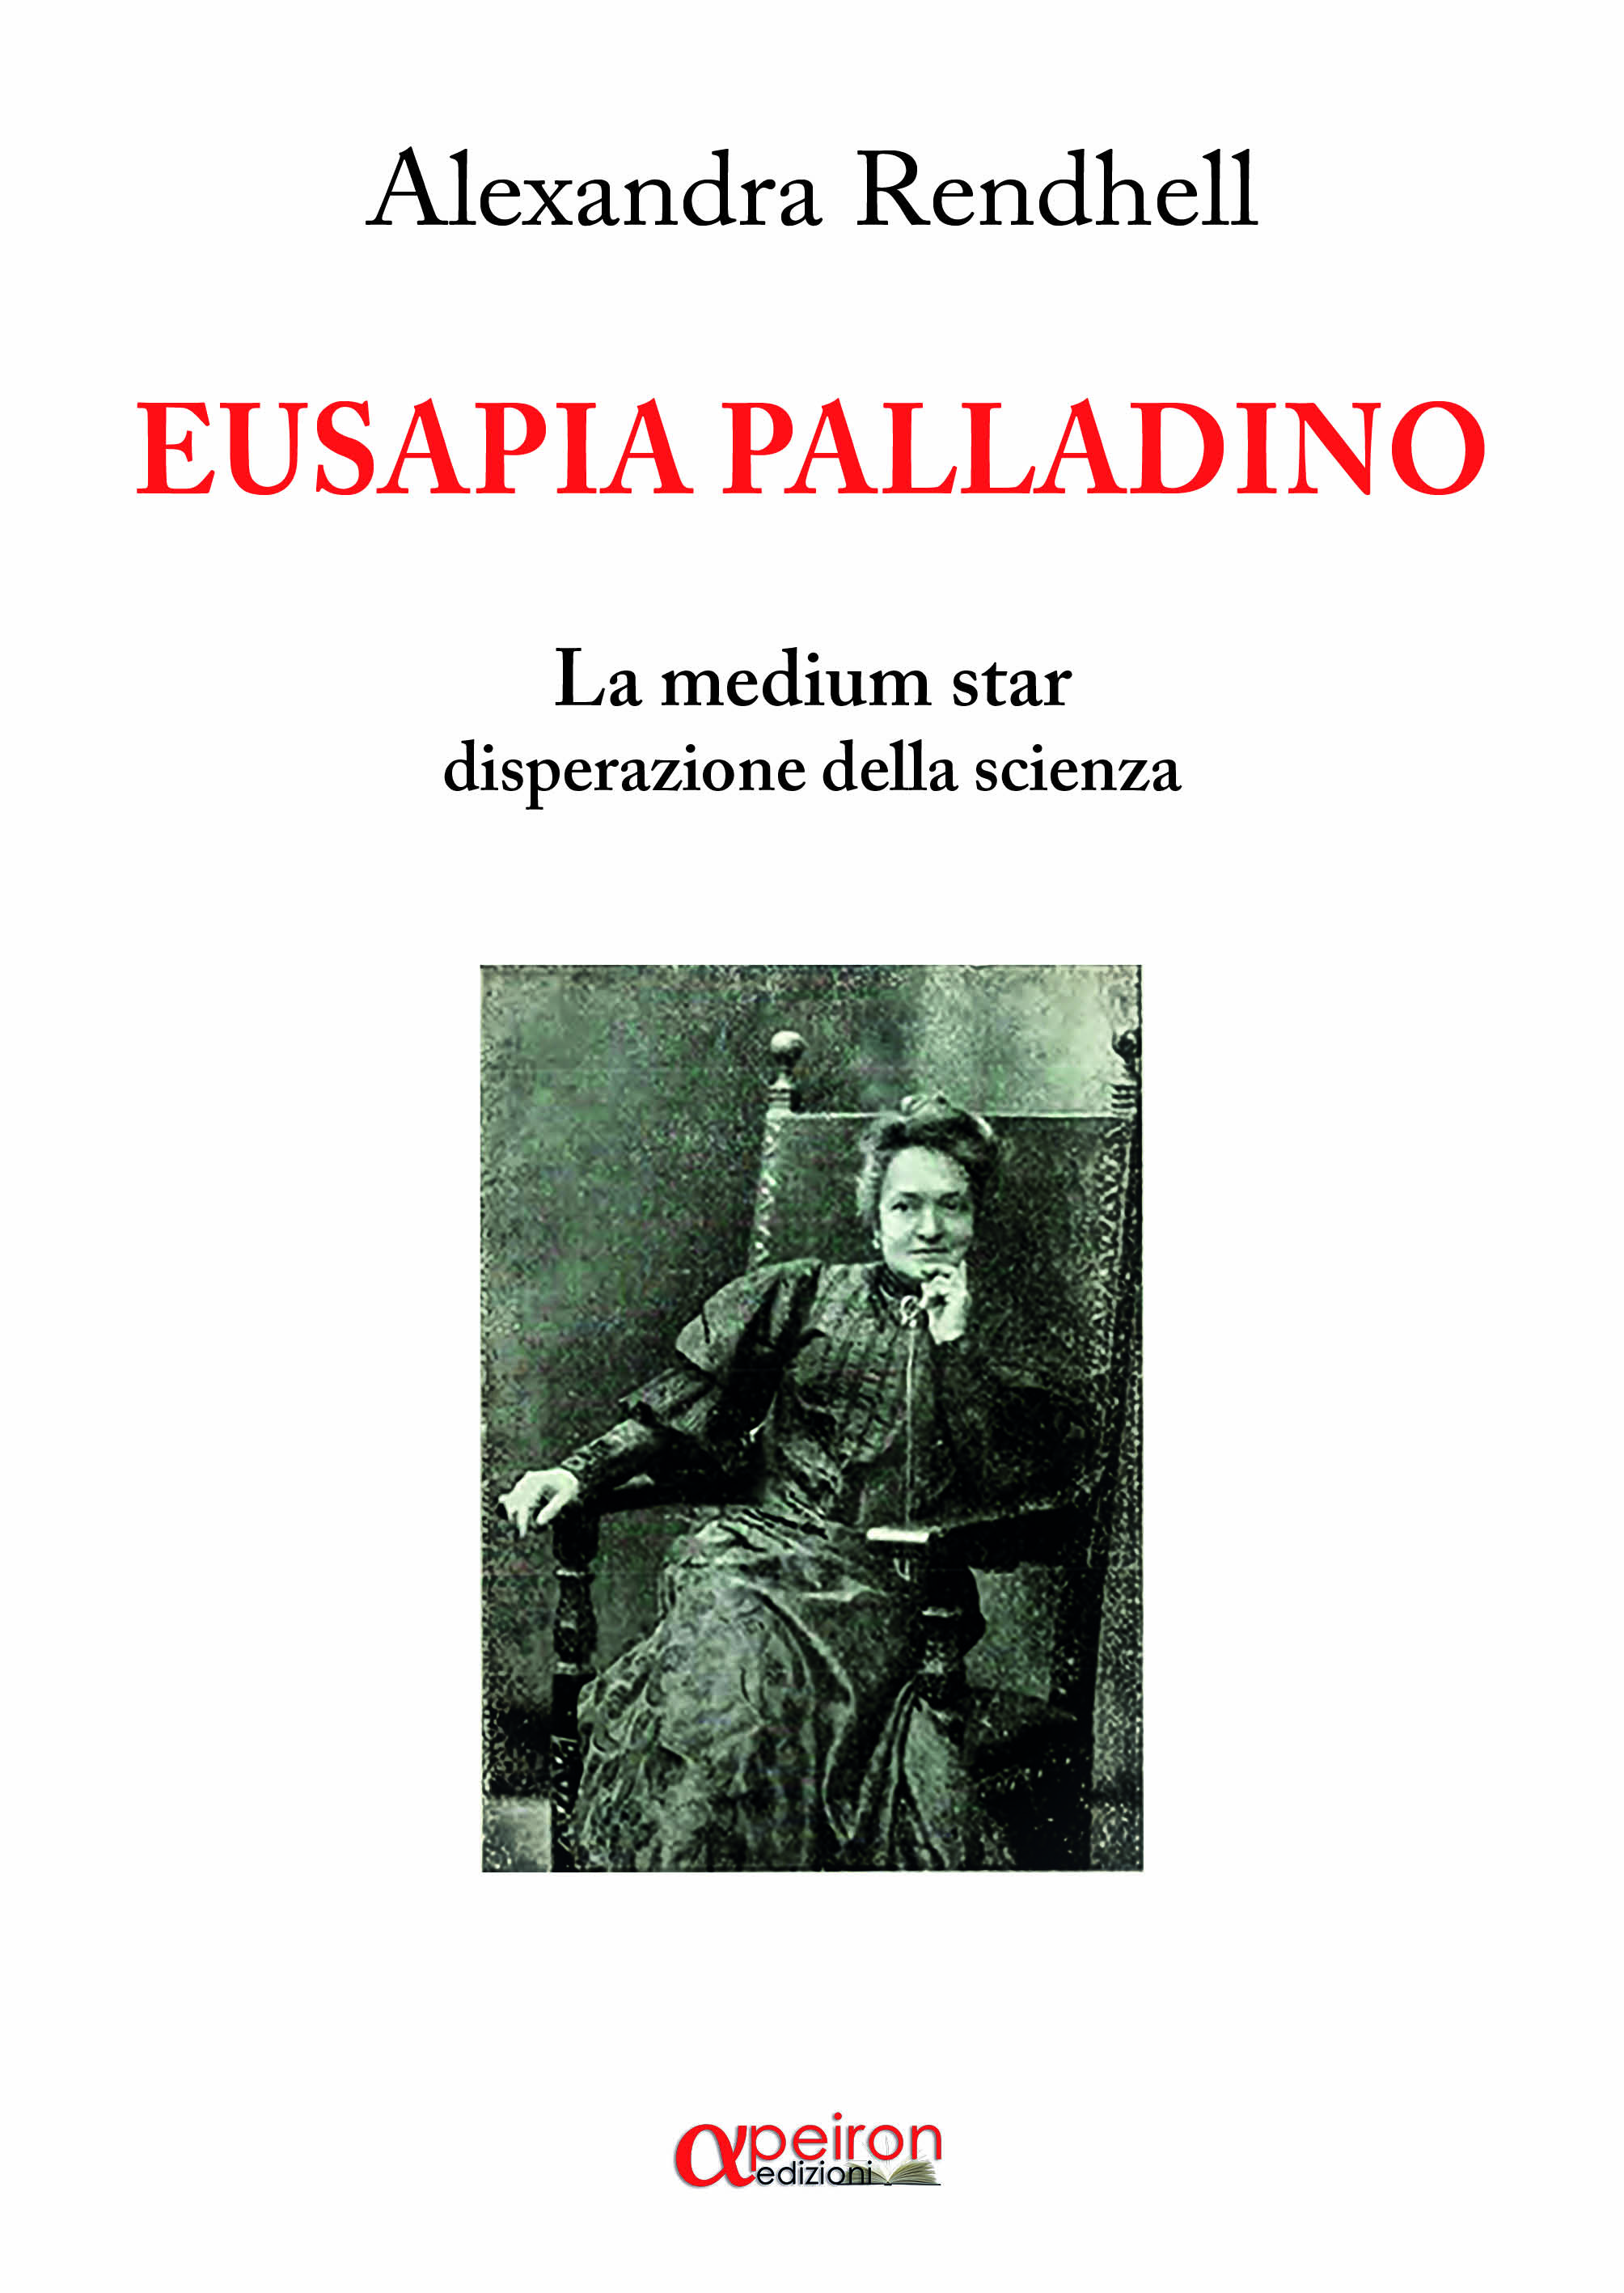 Due donne eccezionali si incontrano - Alexandra Rendhel dedica un volume a Eusapia Palladino